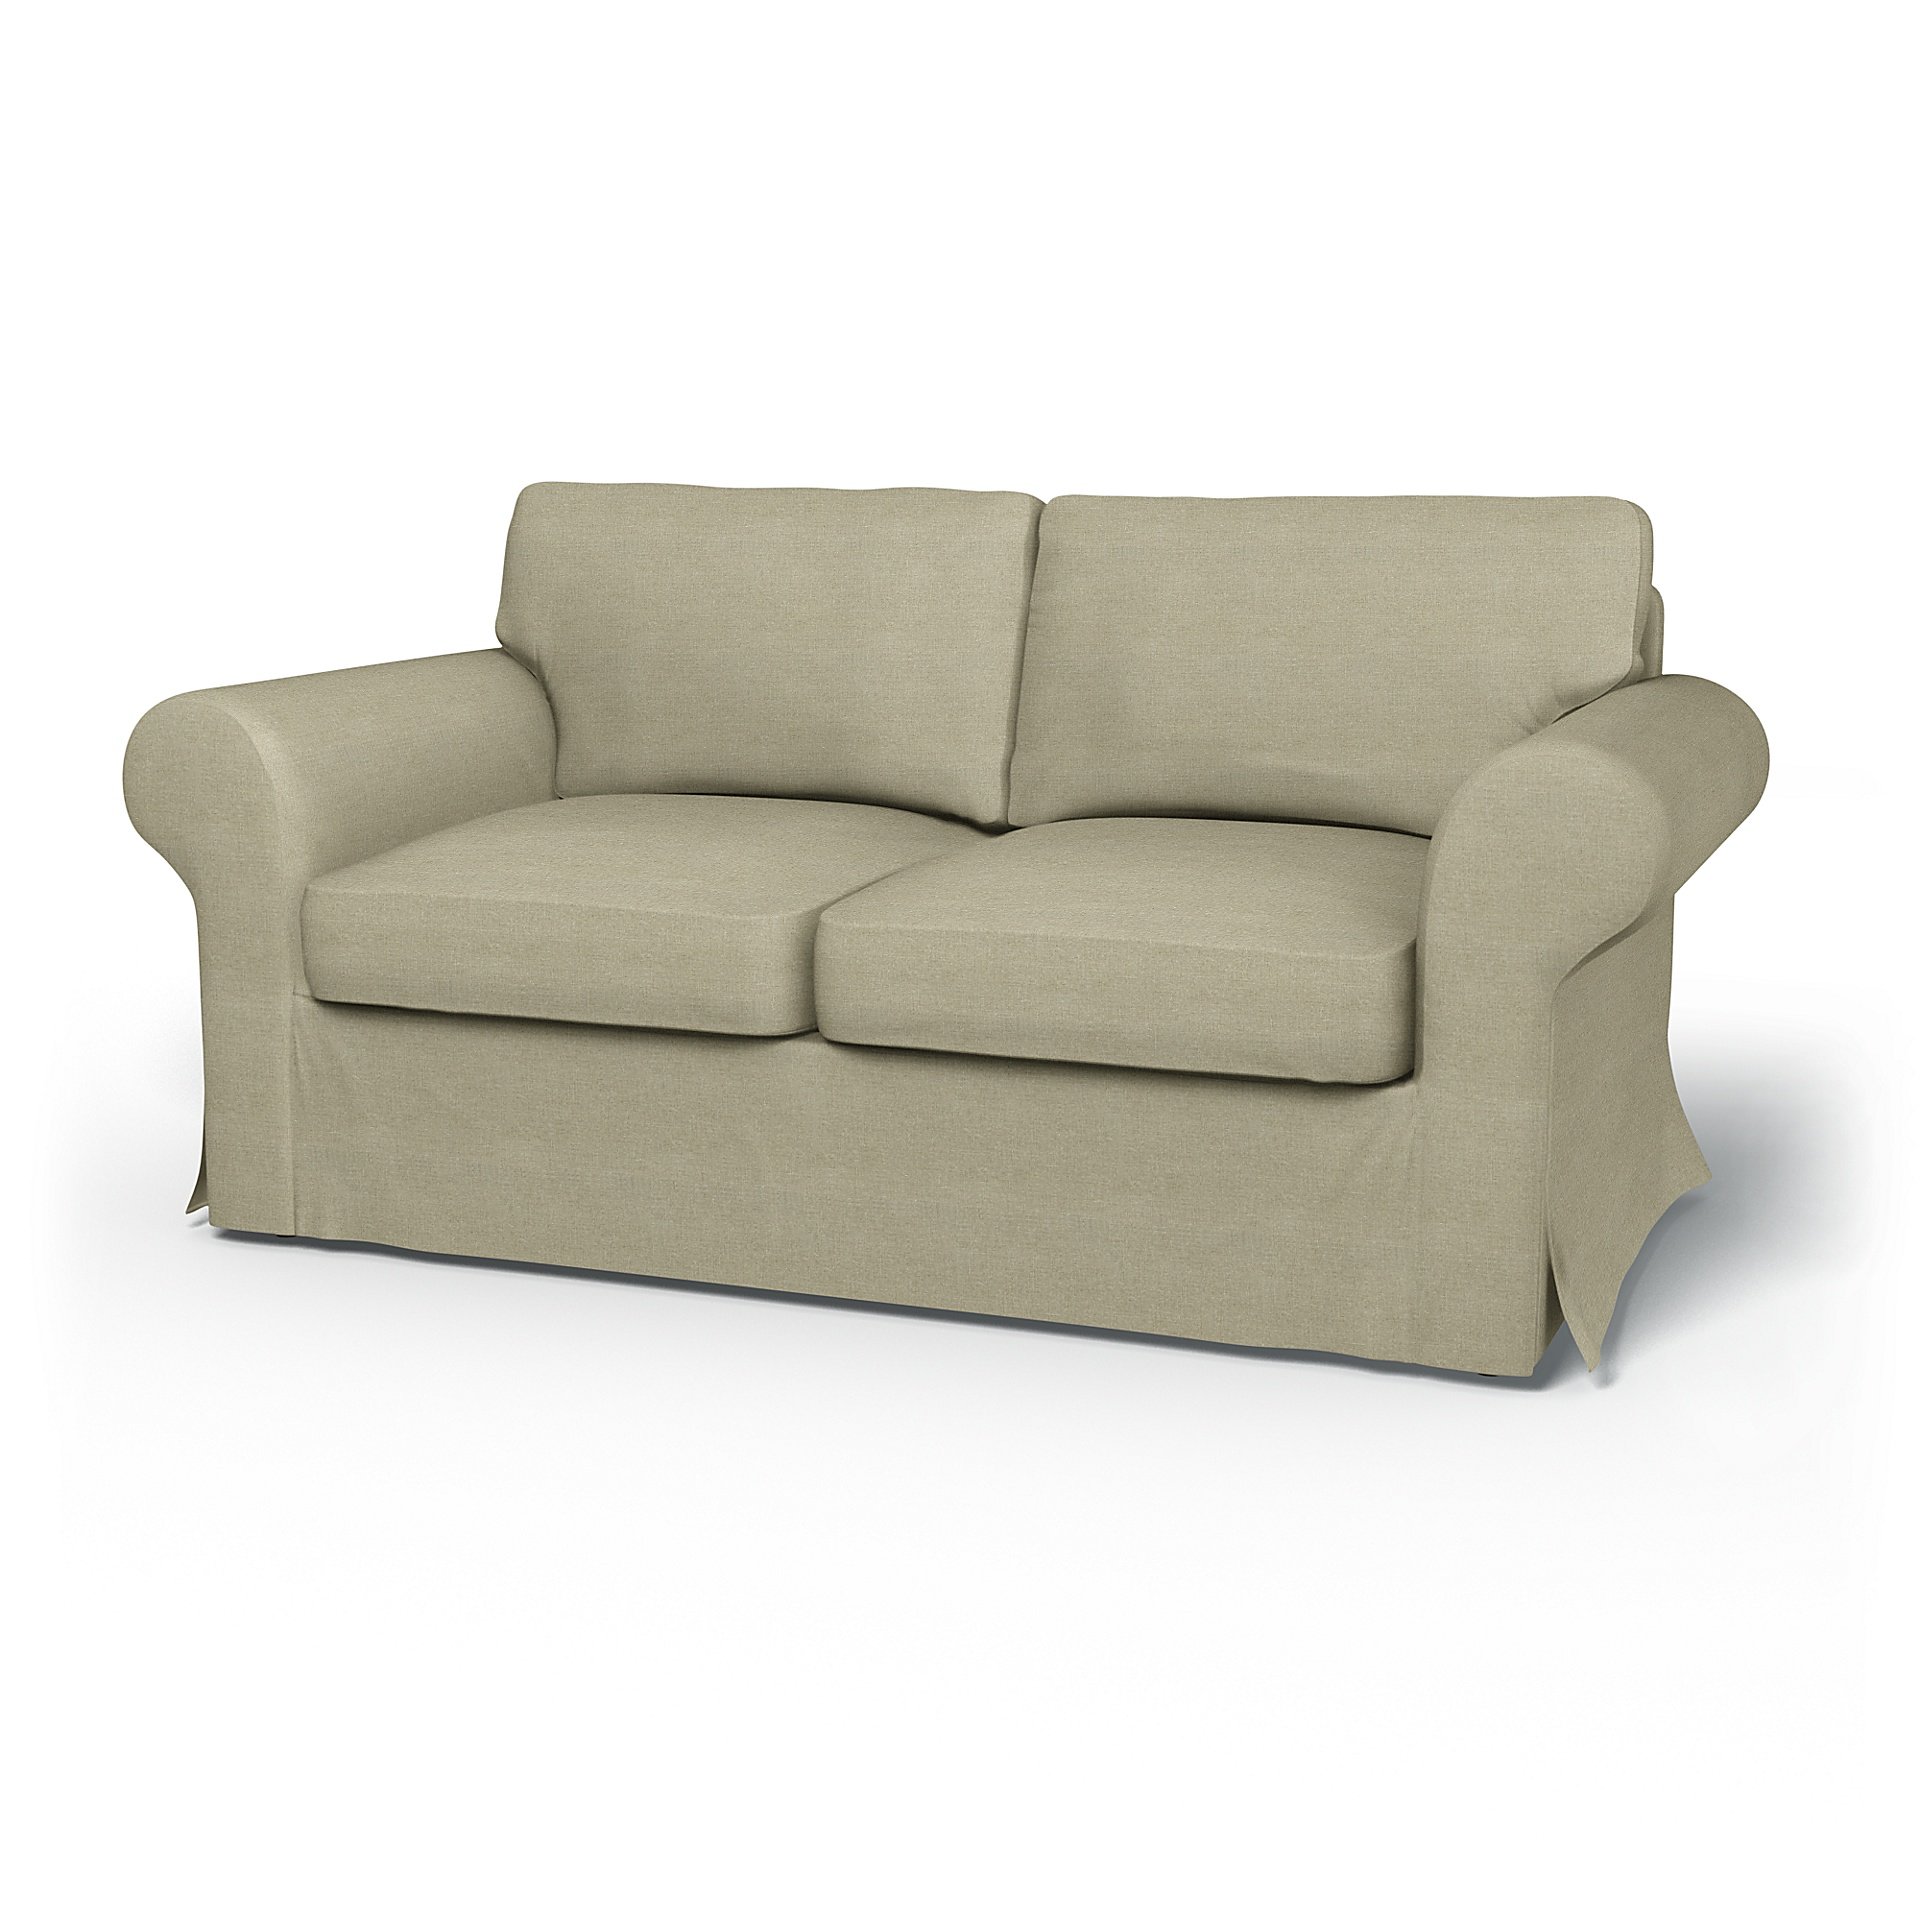 IKEA - Ektorp 2 Seater Sofa Bed Cover, Pebble, Linen - Bemz